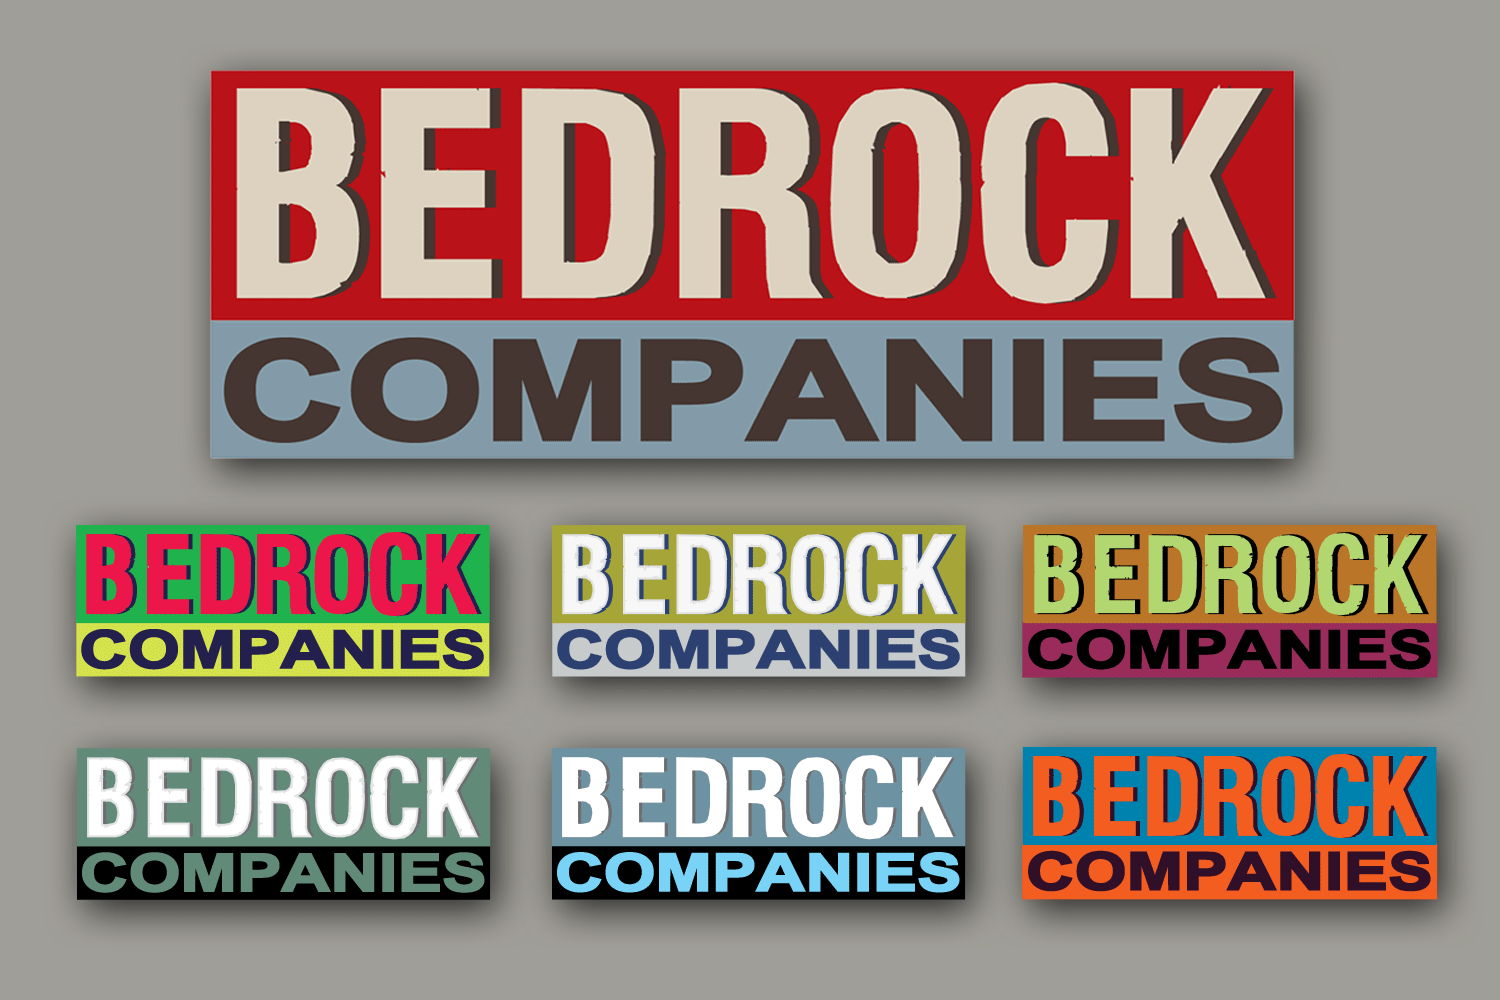 Bedrock Companies